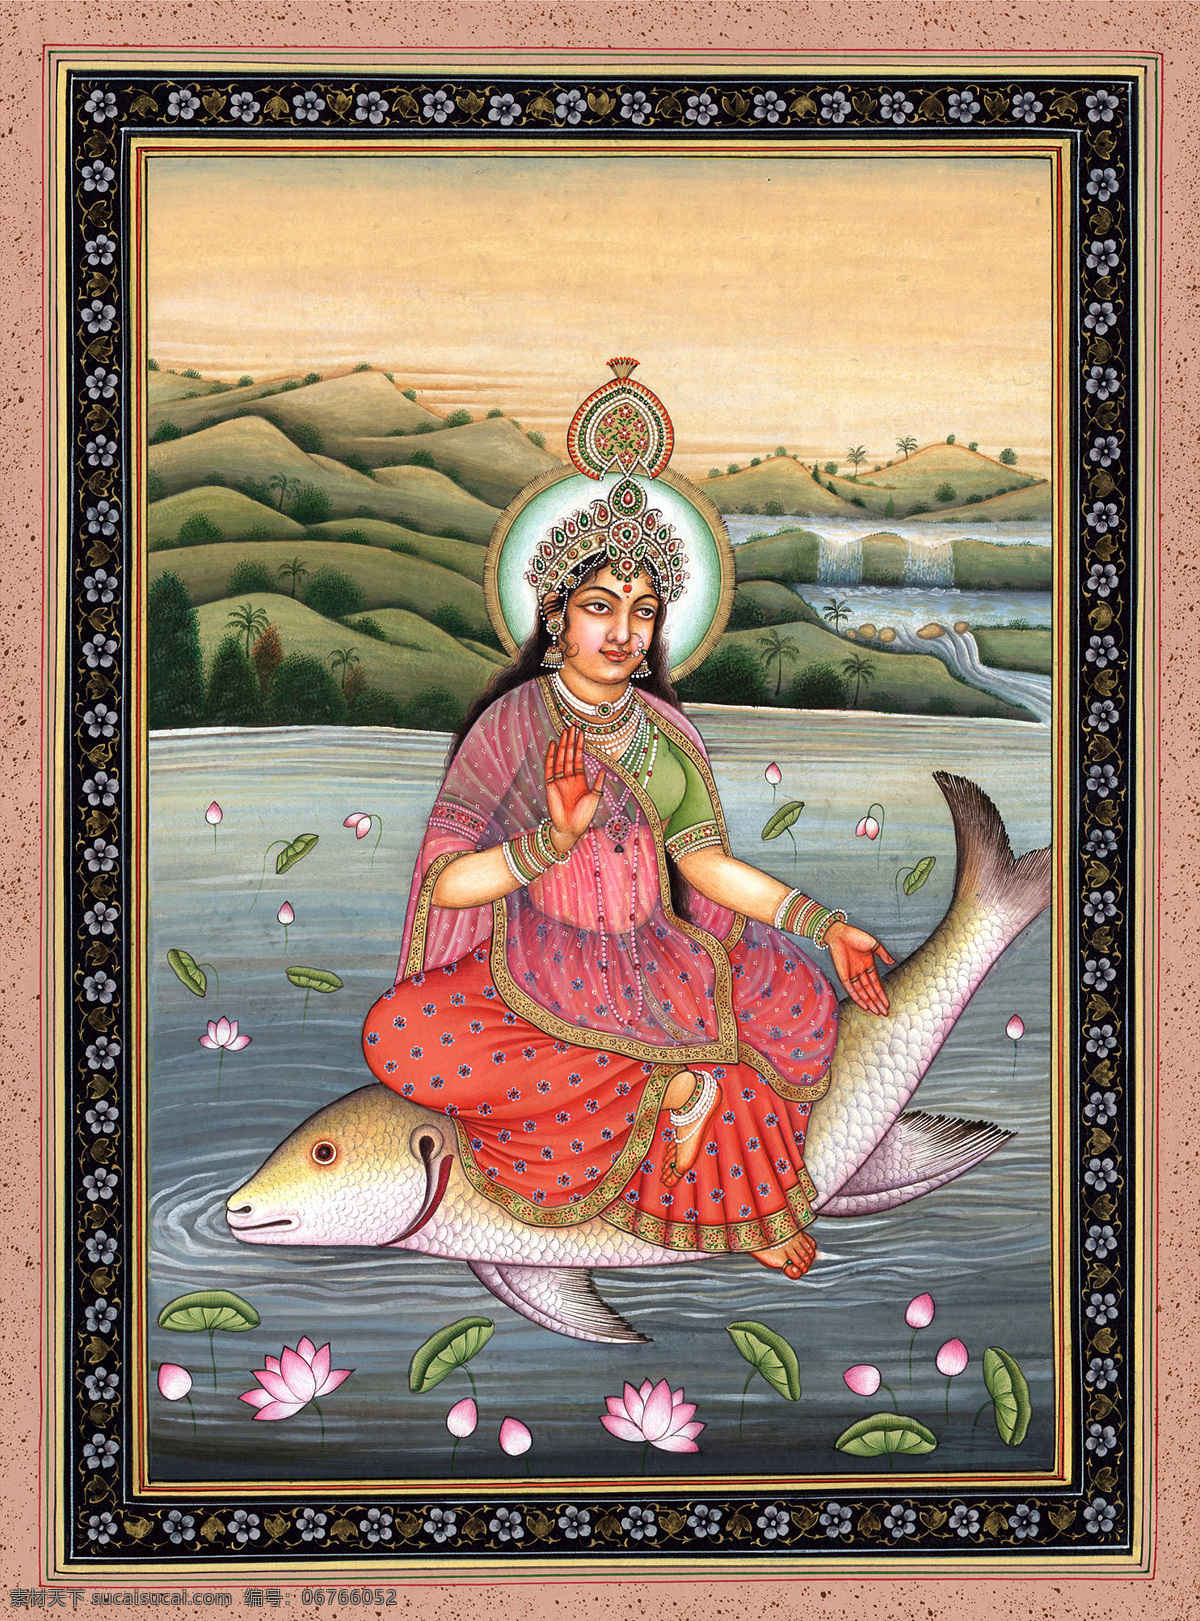 印度神像 神像 鱼 大鱼 女人 荷花池 宗教信仰 文化艺术 传统文化